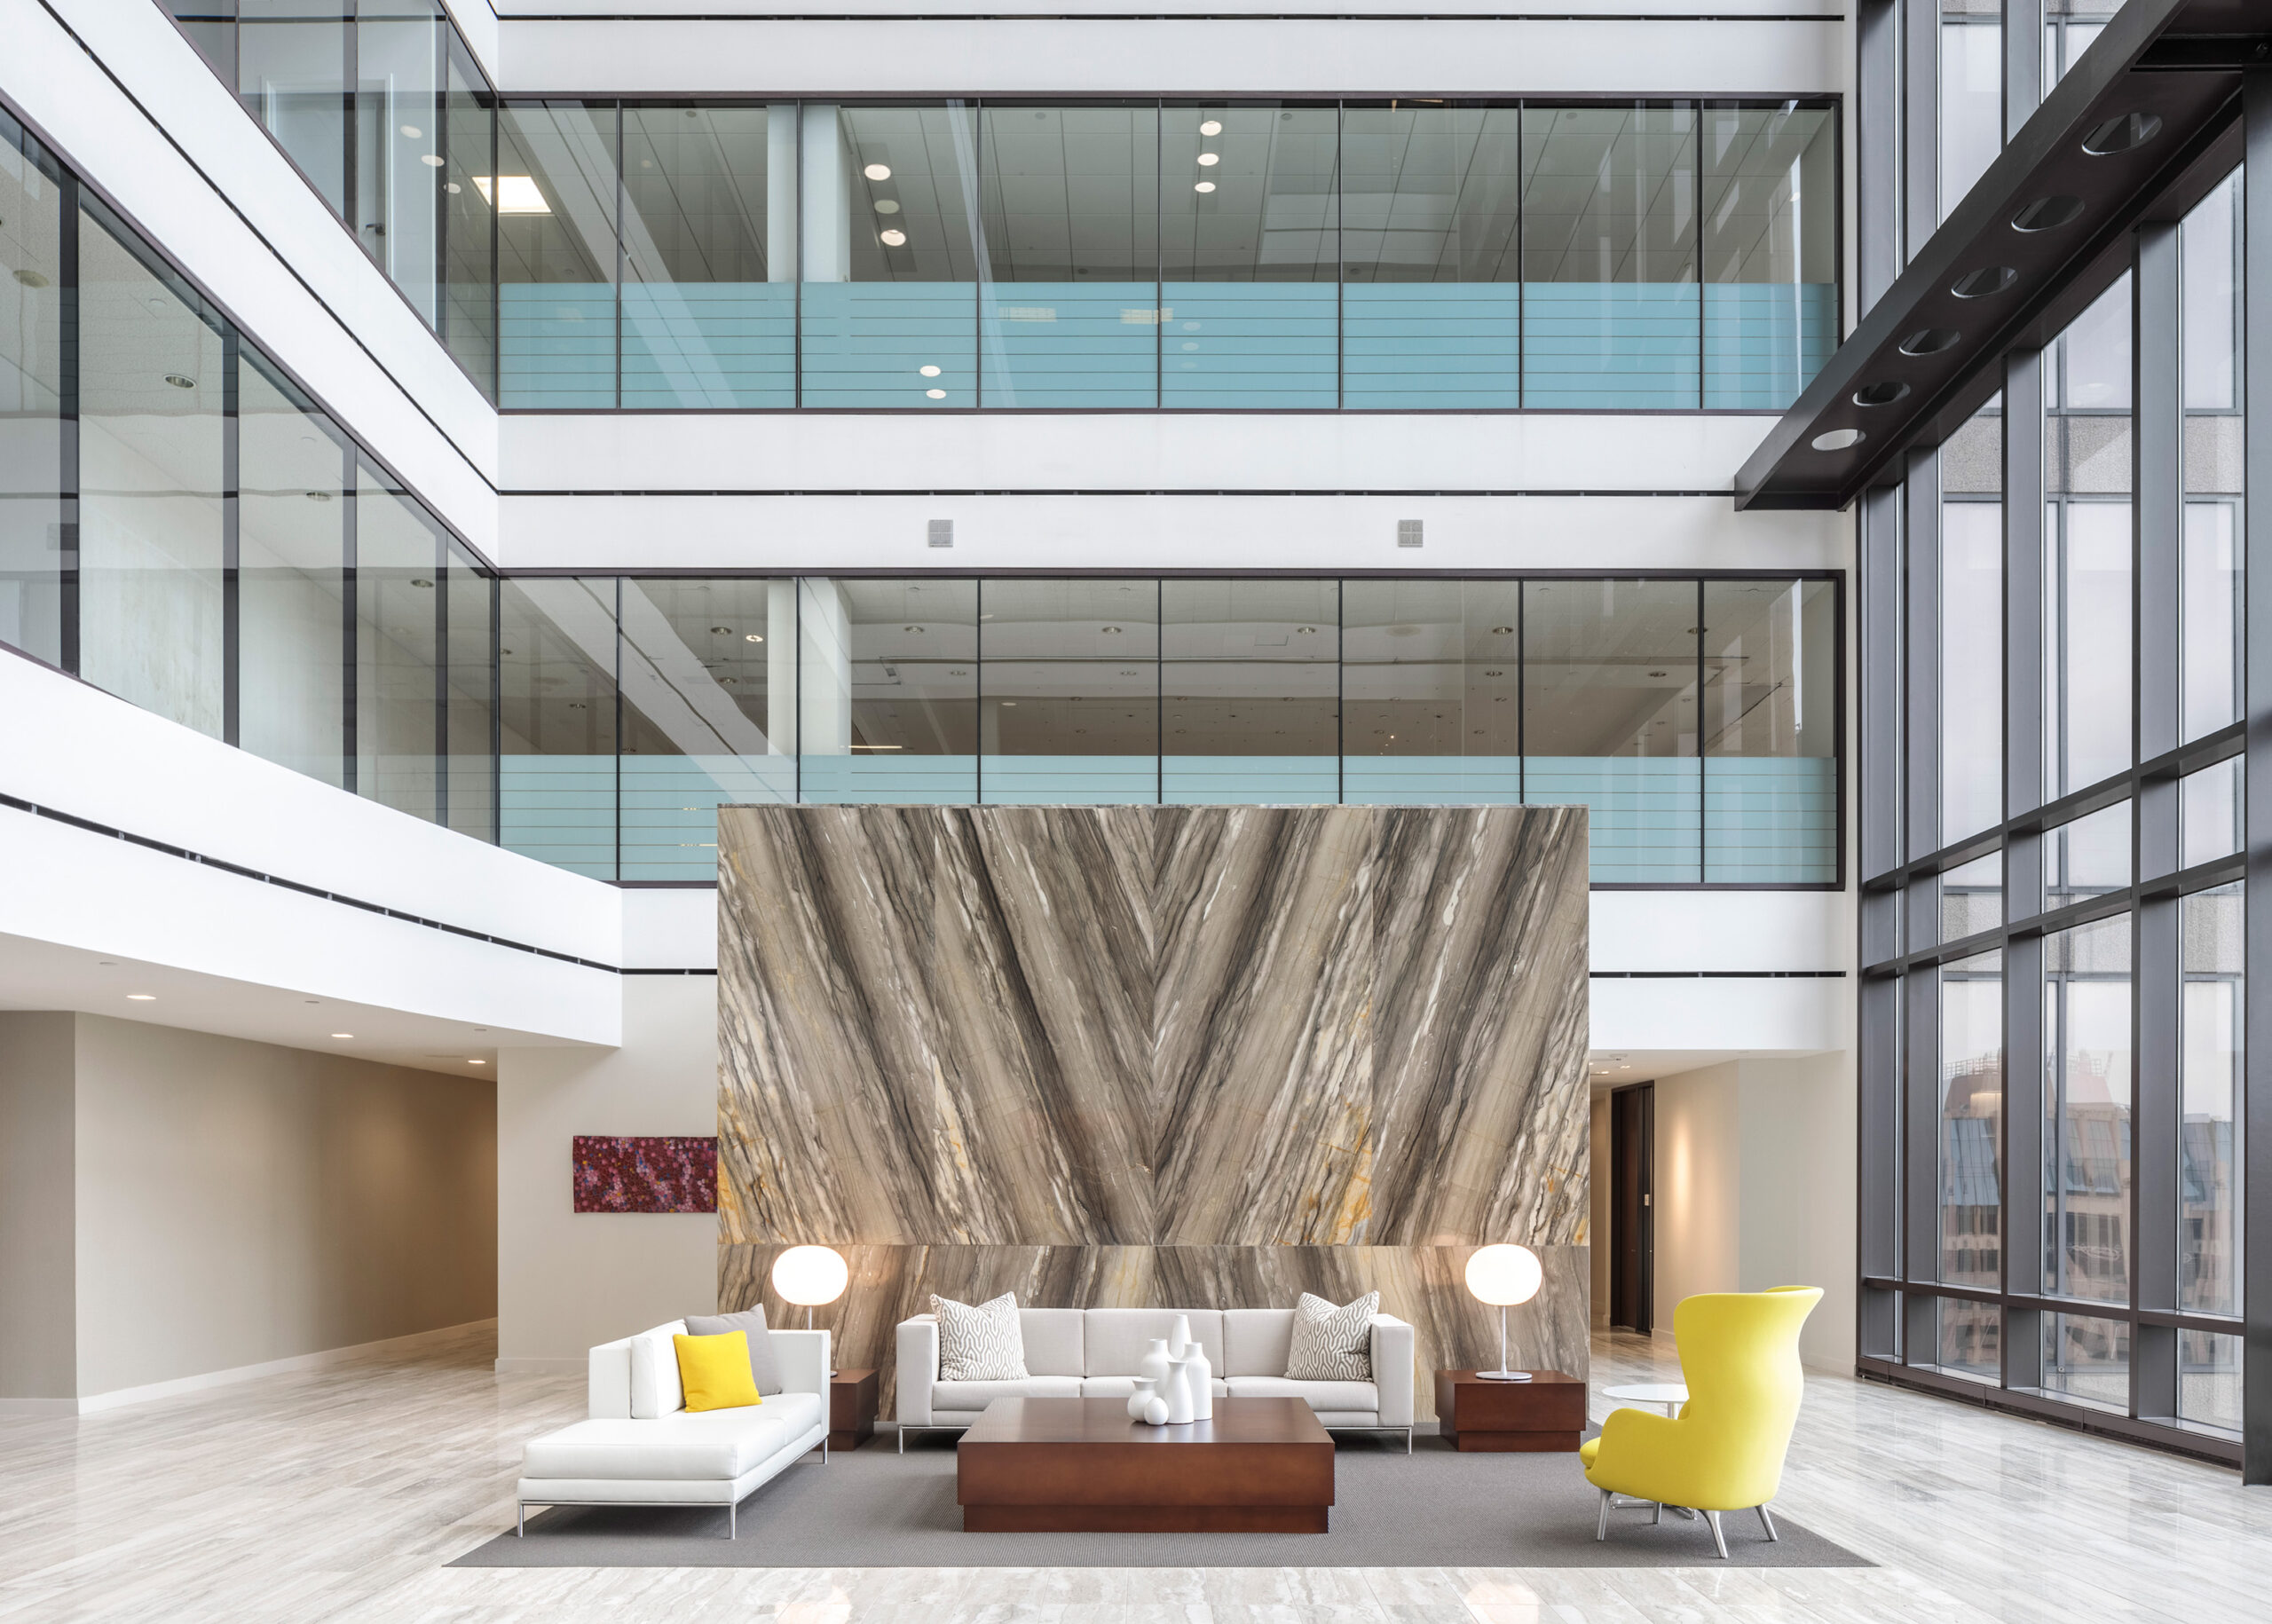 Architect Vocon Interior Design Calfee Columbus Corporate Office Corporate Interiors